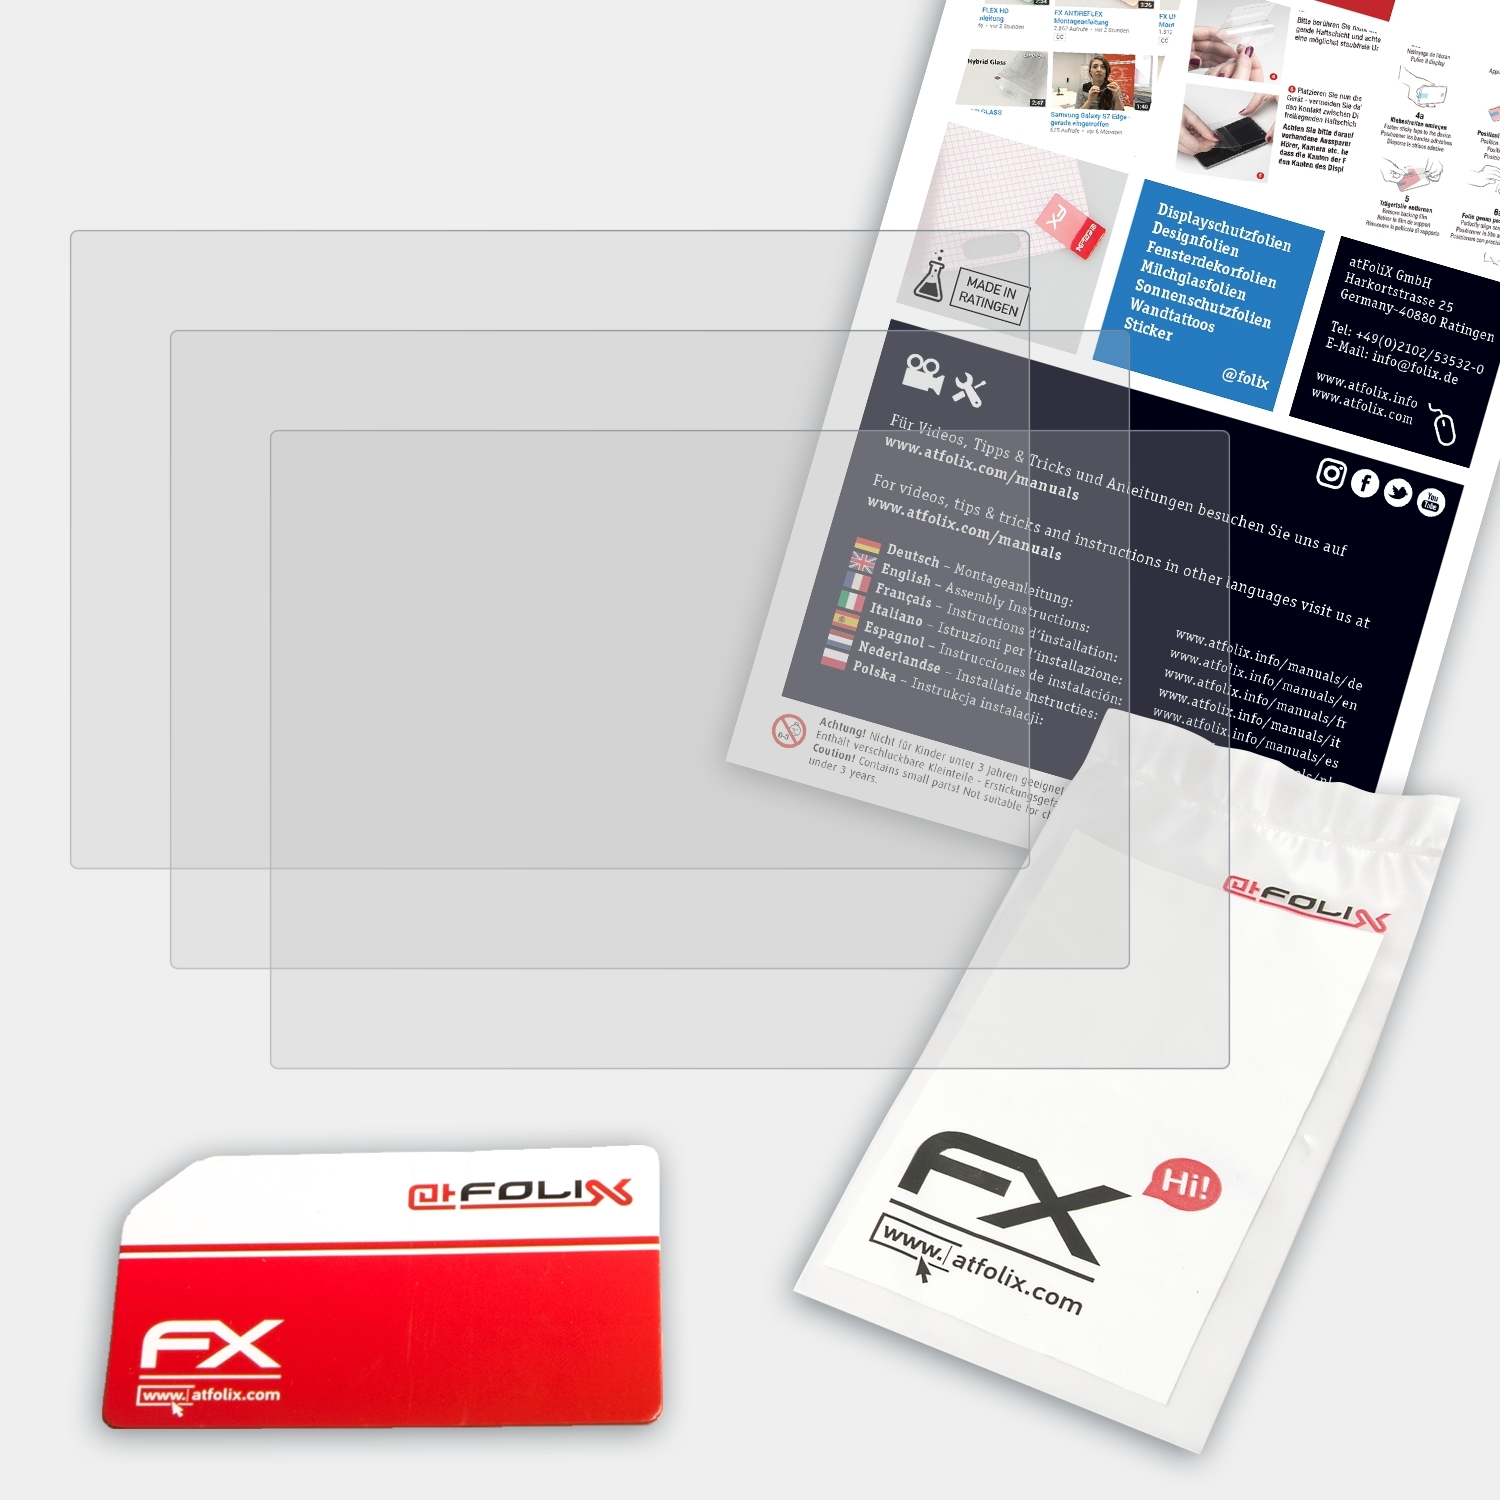 ATFOLIX 3x Lumix DMC-FZ150) Panasonic FX-Antireflex Displayschutz(für